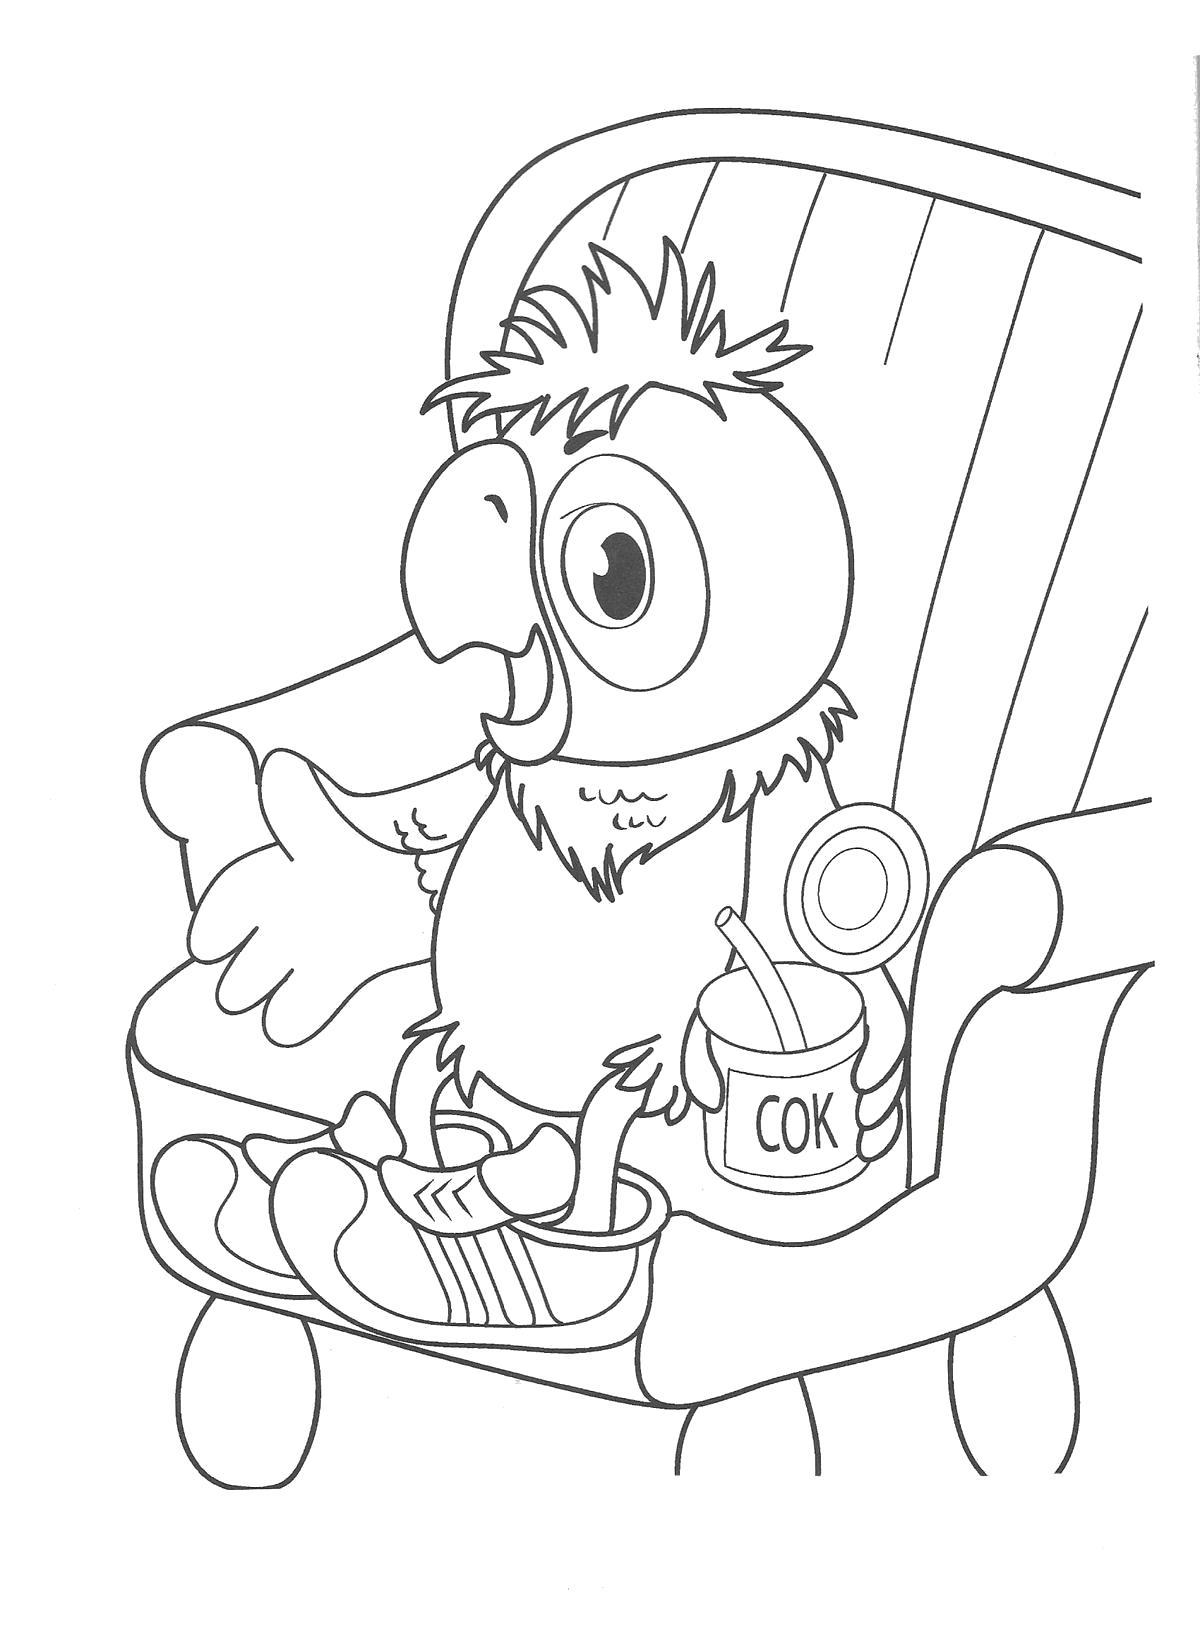 Раскраски Возвращение блудного попугая, раскраски для малышей по советскому мультфильму про попугая Кешу  Раскраска попугай кеша сидит в кресле и пьет сок